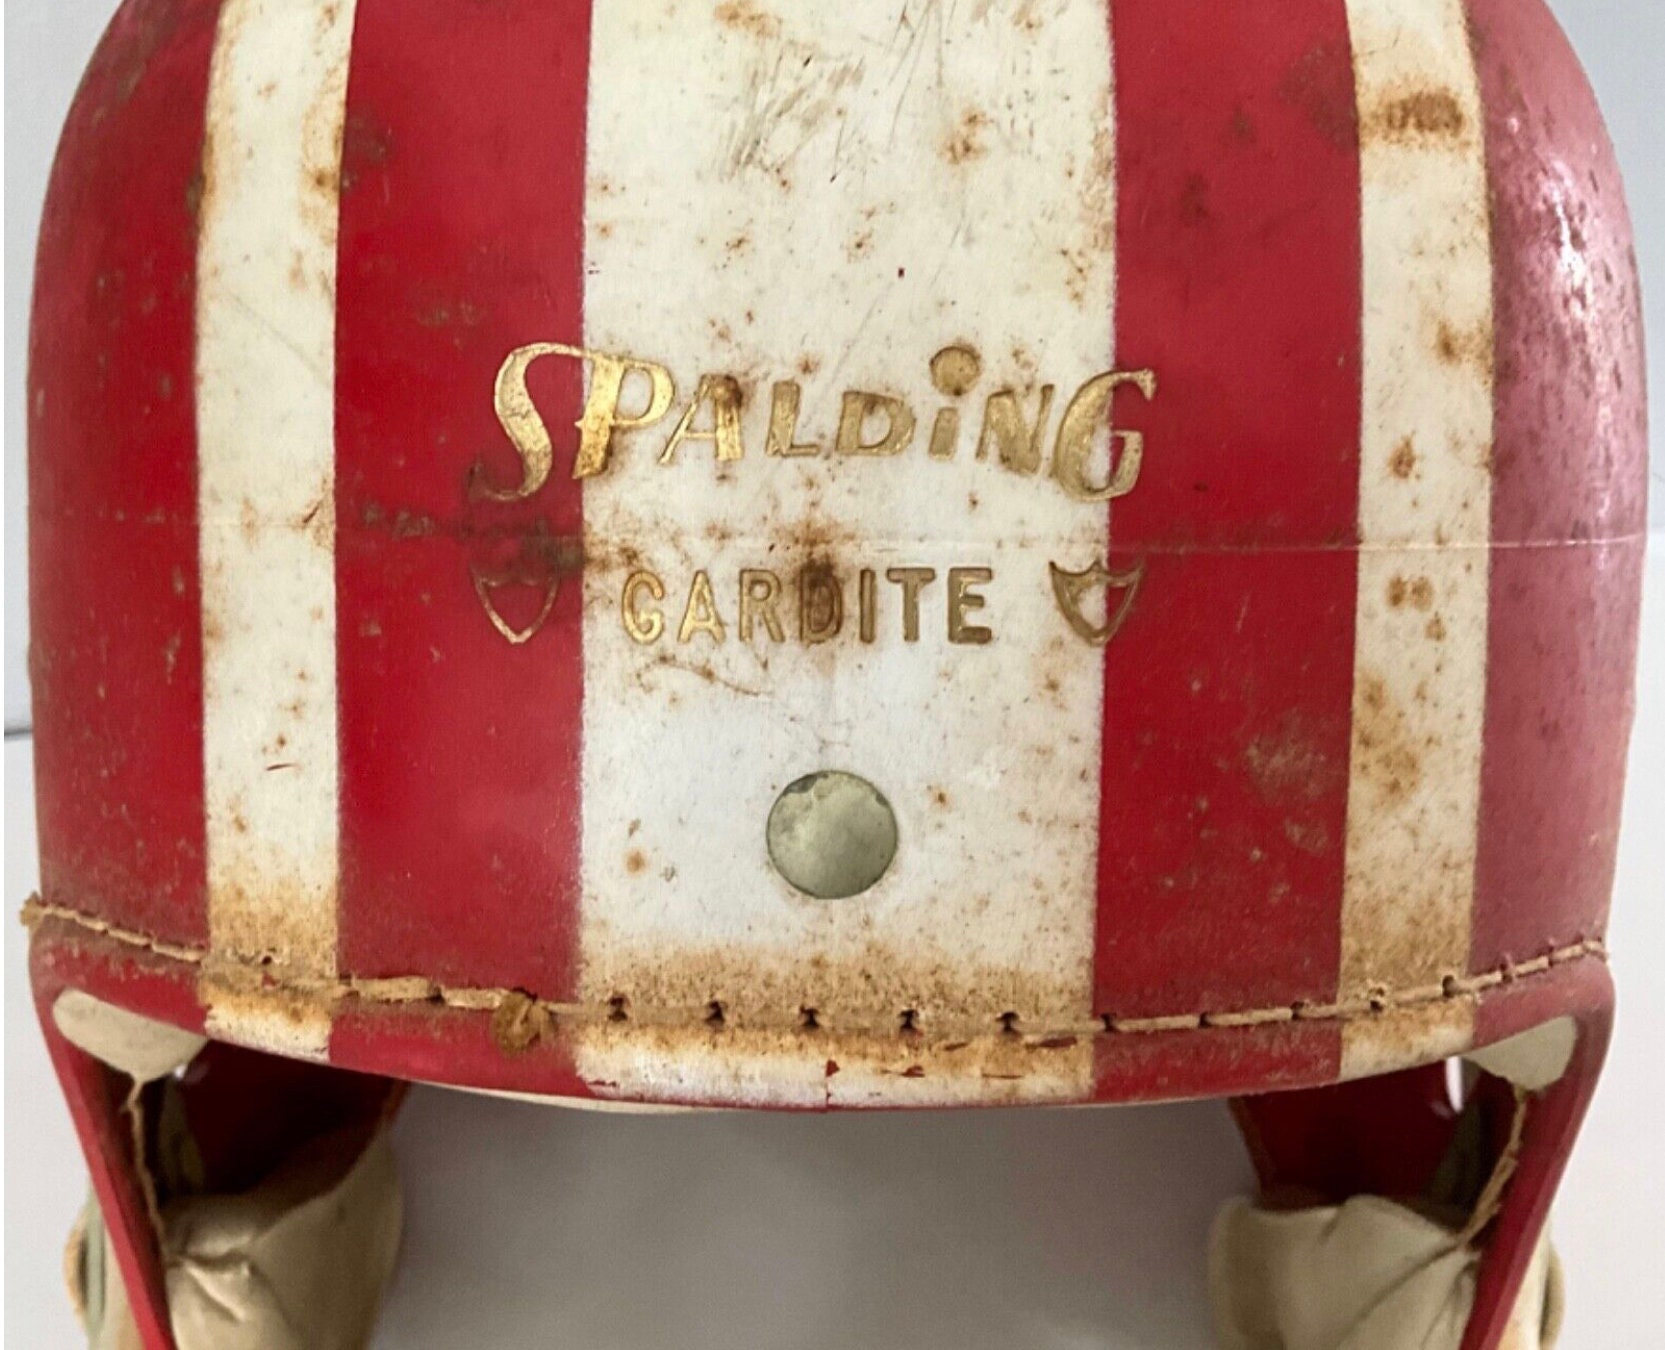 Rare Vintage Spalding Gardite jim Taylor 62-317 Small Football Helmet - Etsy | Fertiggardinen